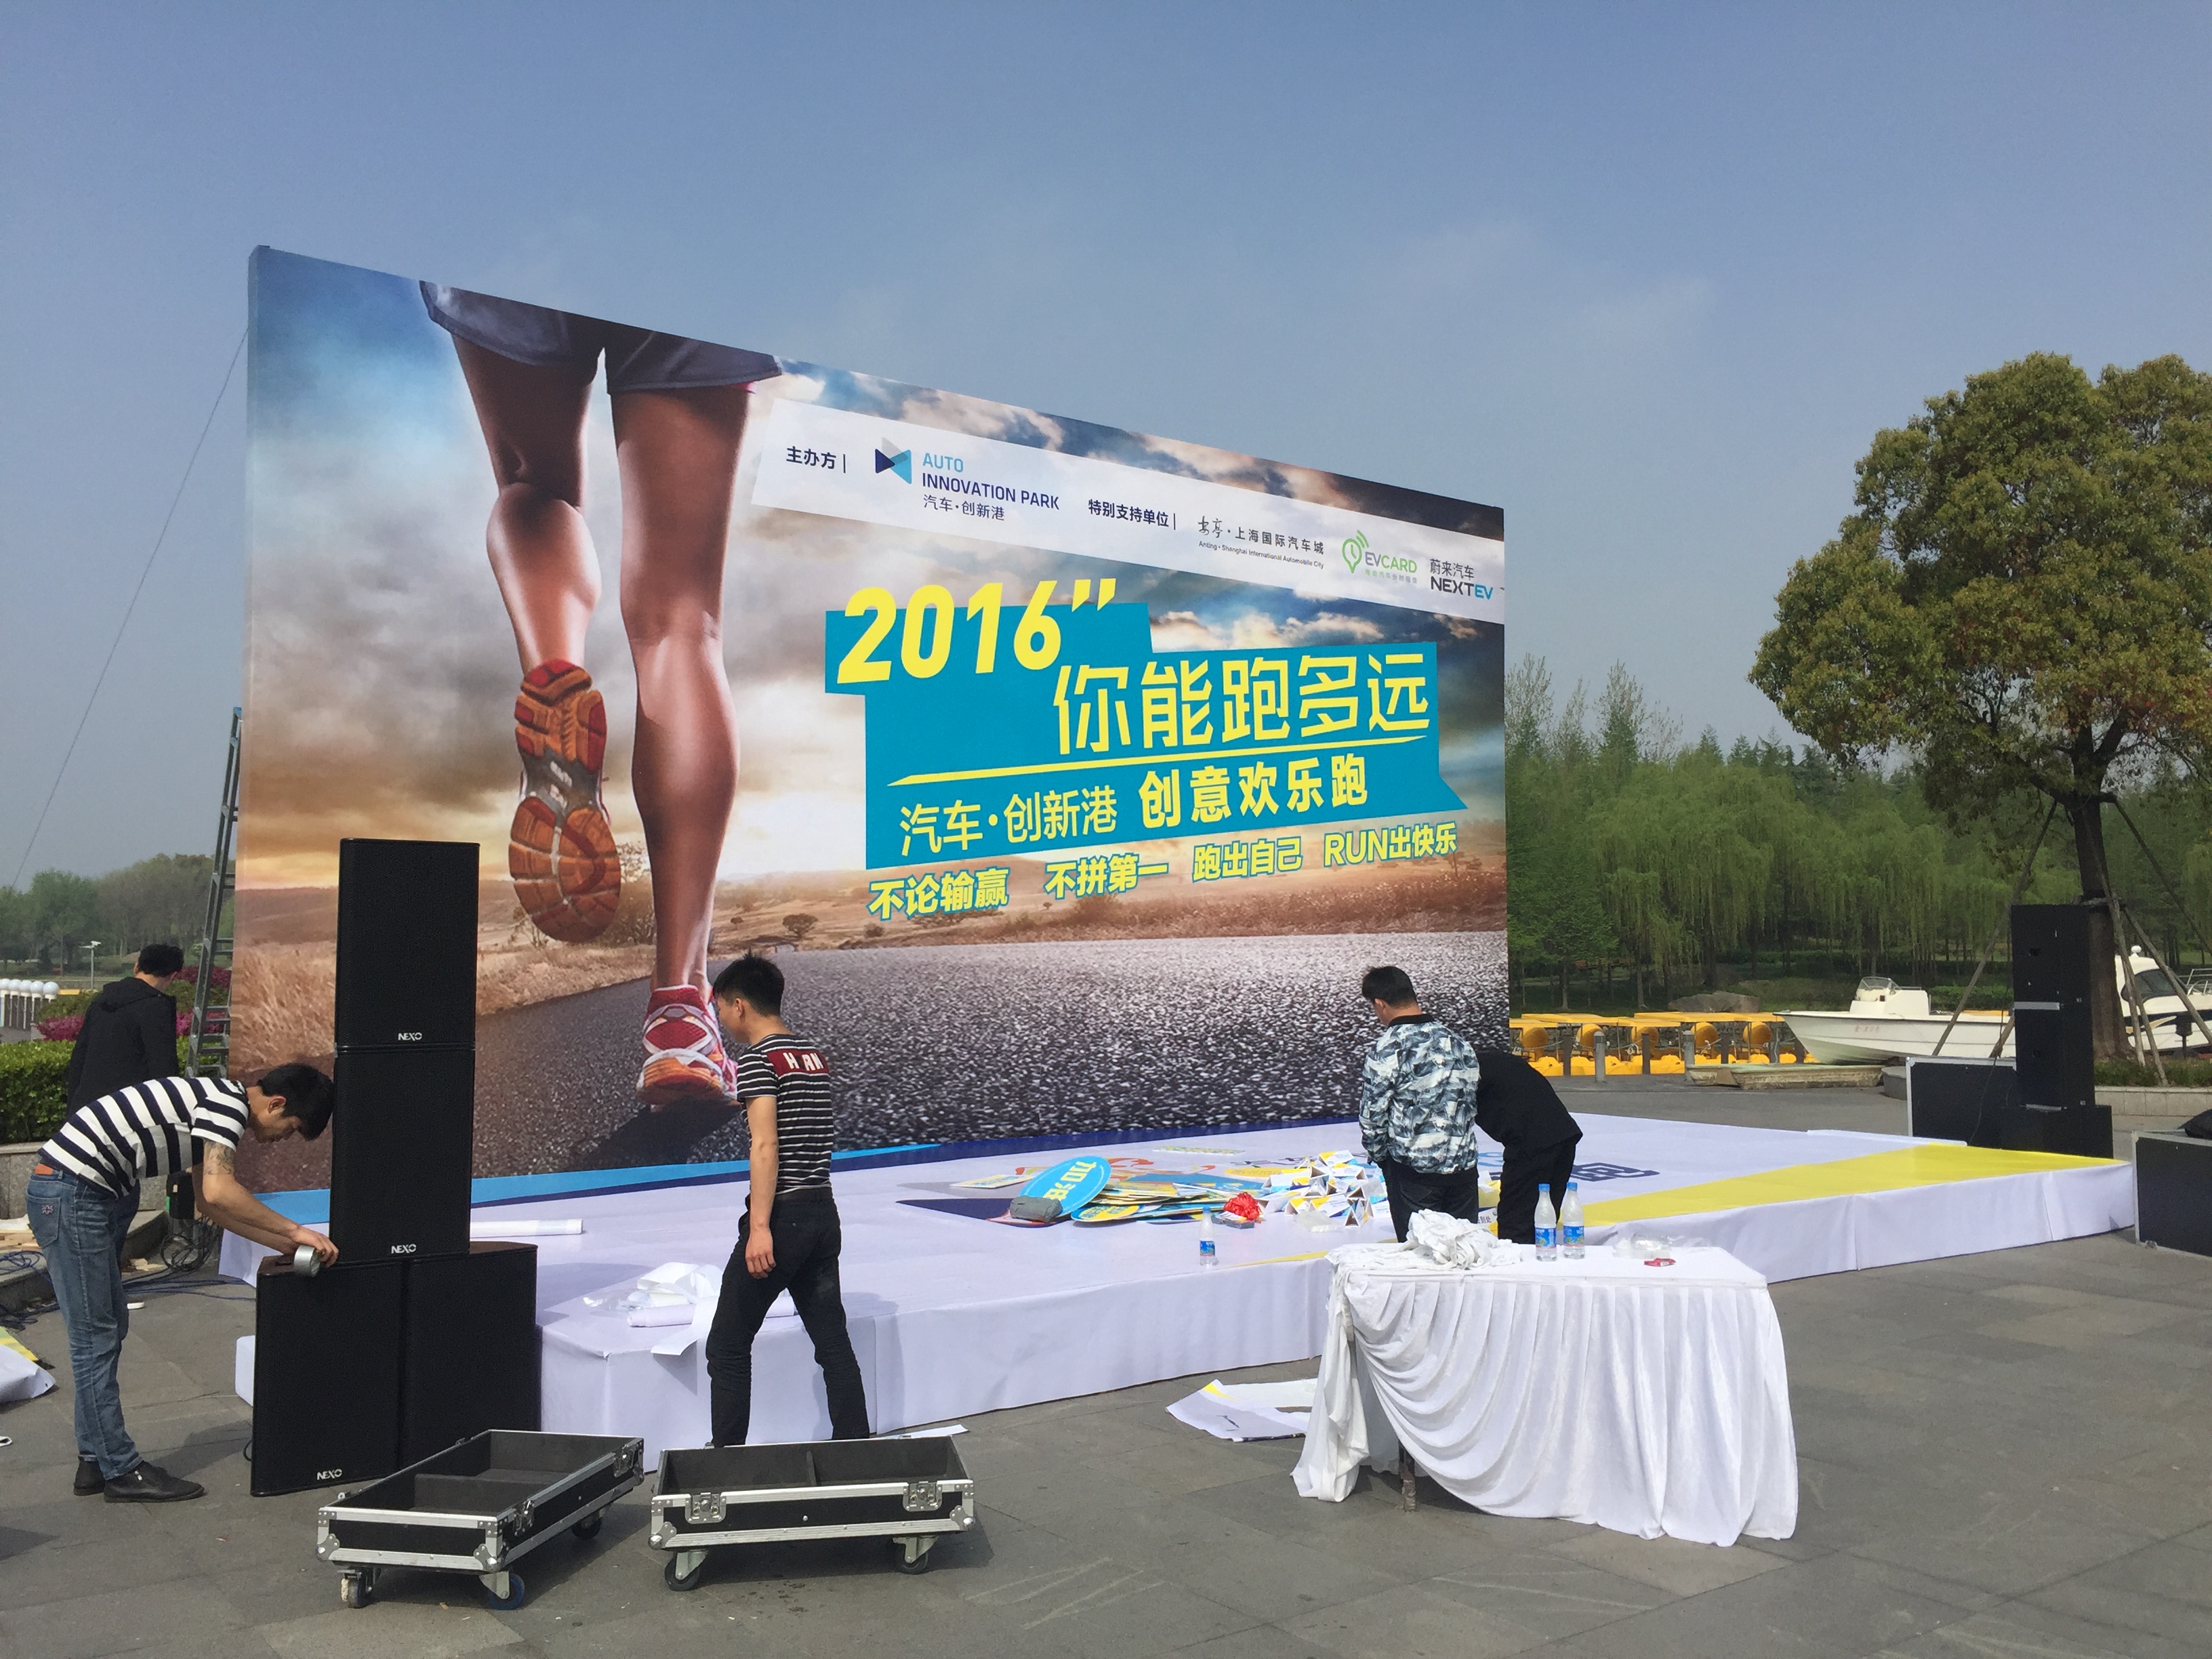 上海赛事搭建布置公司 上海马拉松赛事篷房搭建. 上海马拉松赛事门头搭建